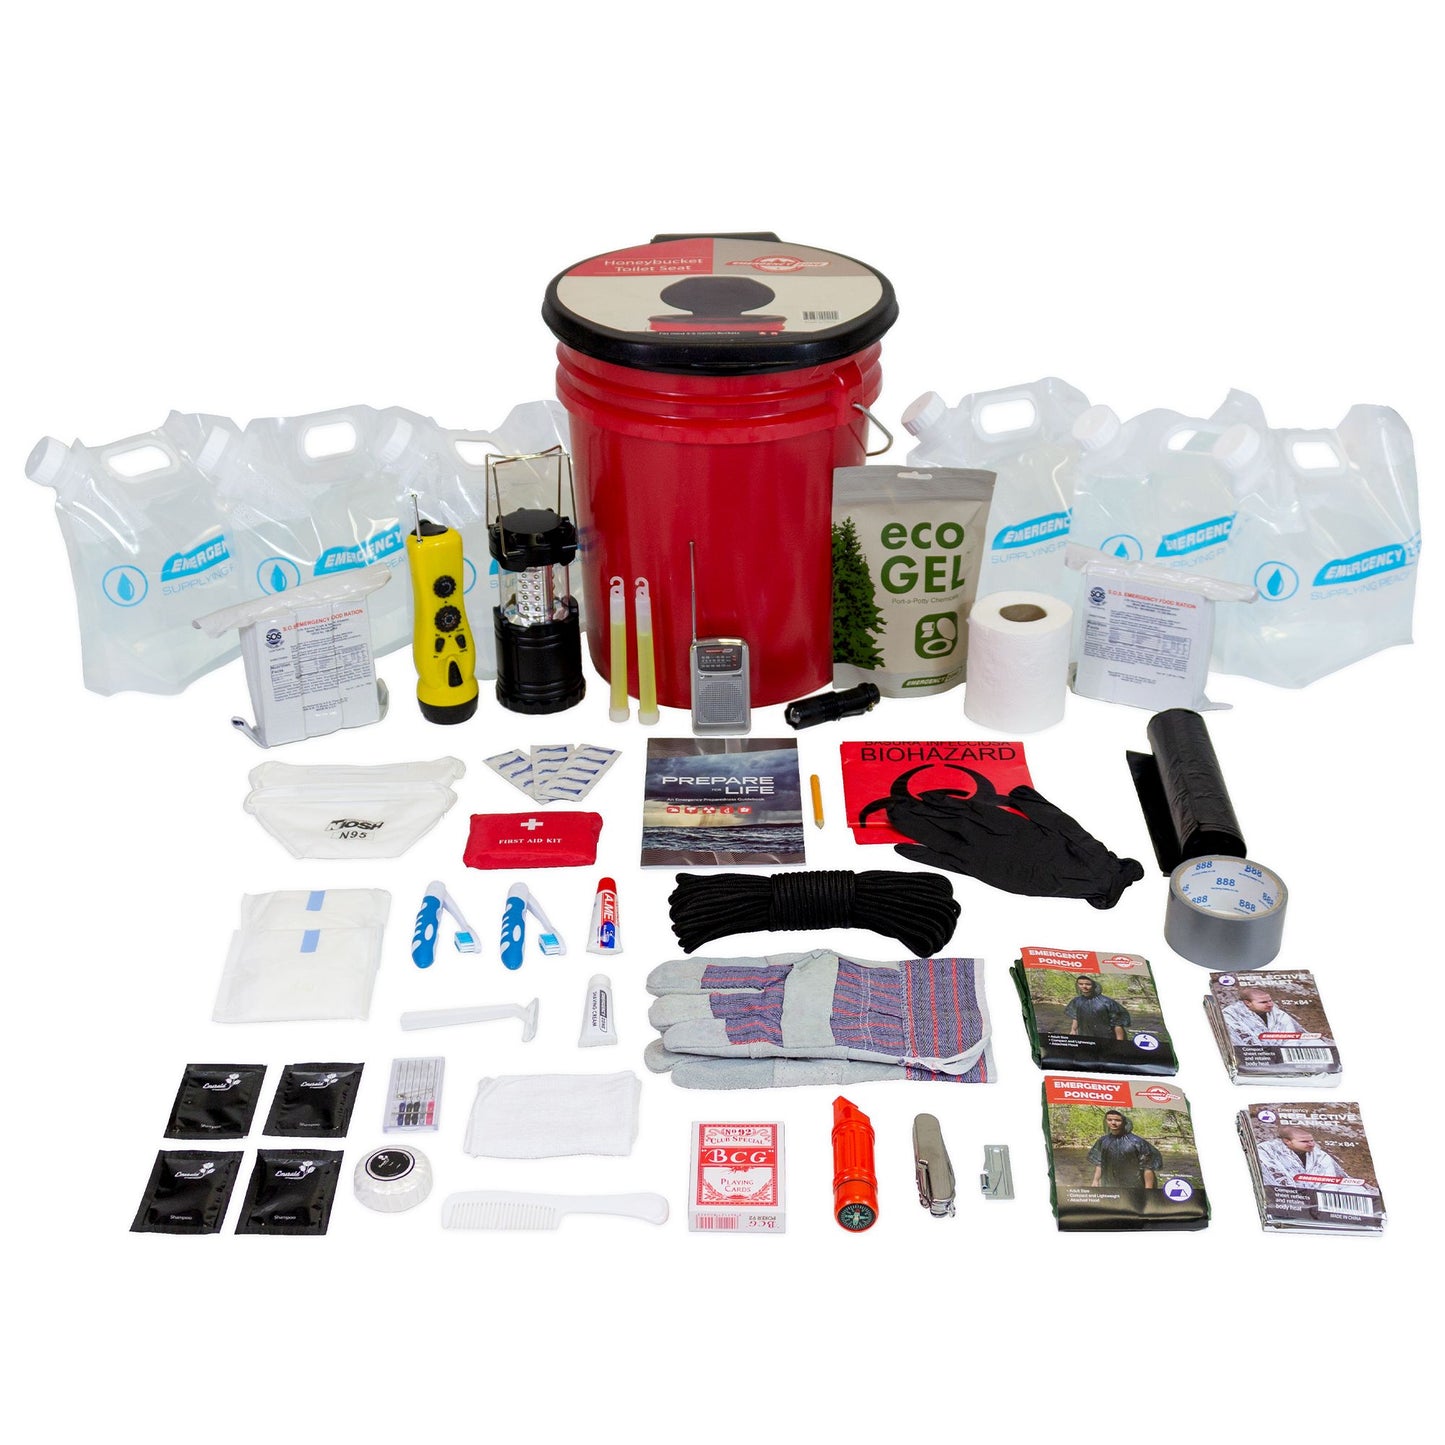 HurricaHurricane Go Bag - Emergency Survival Kit for 2 Peoplene Go Bag